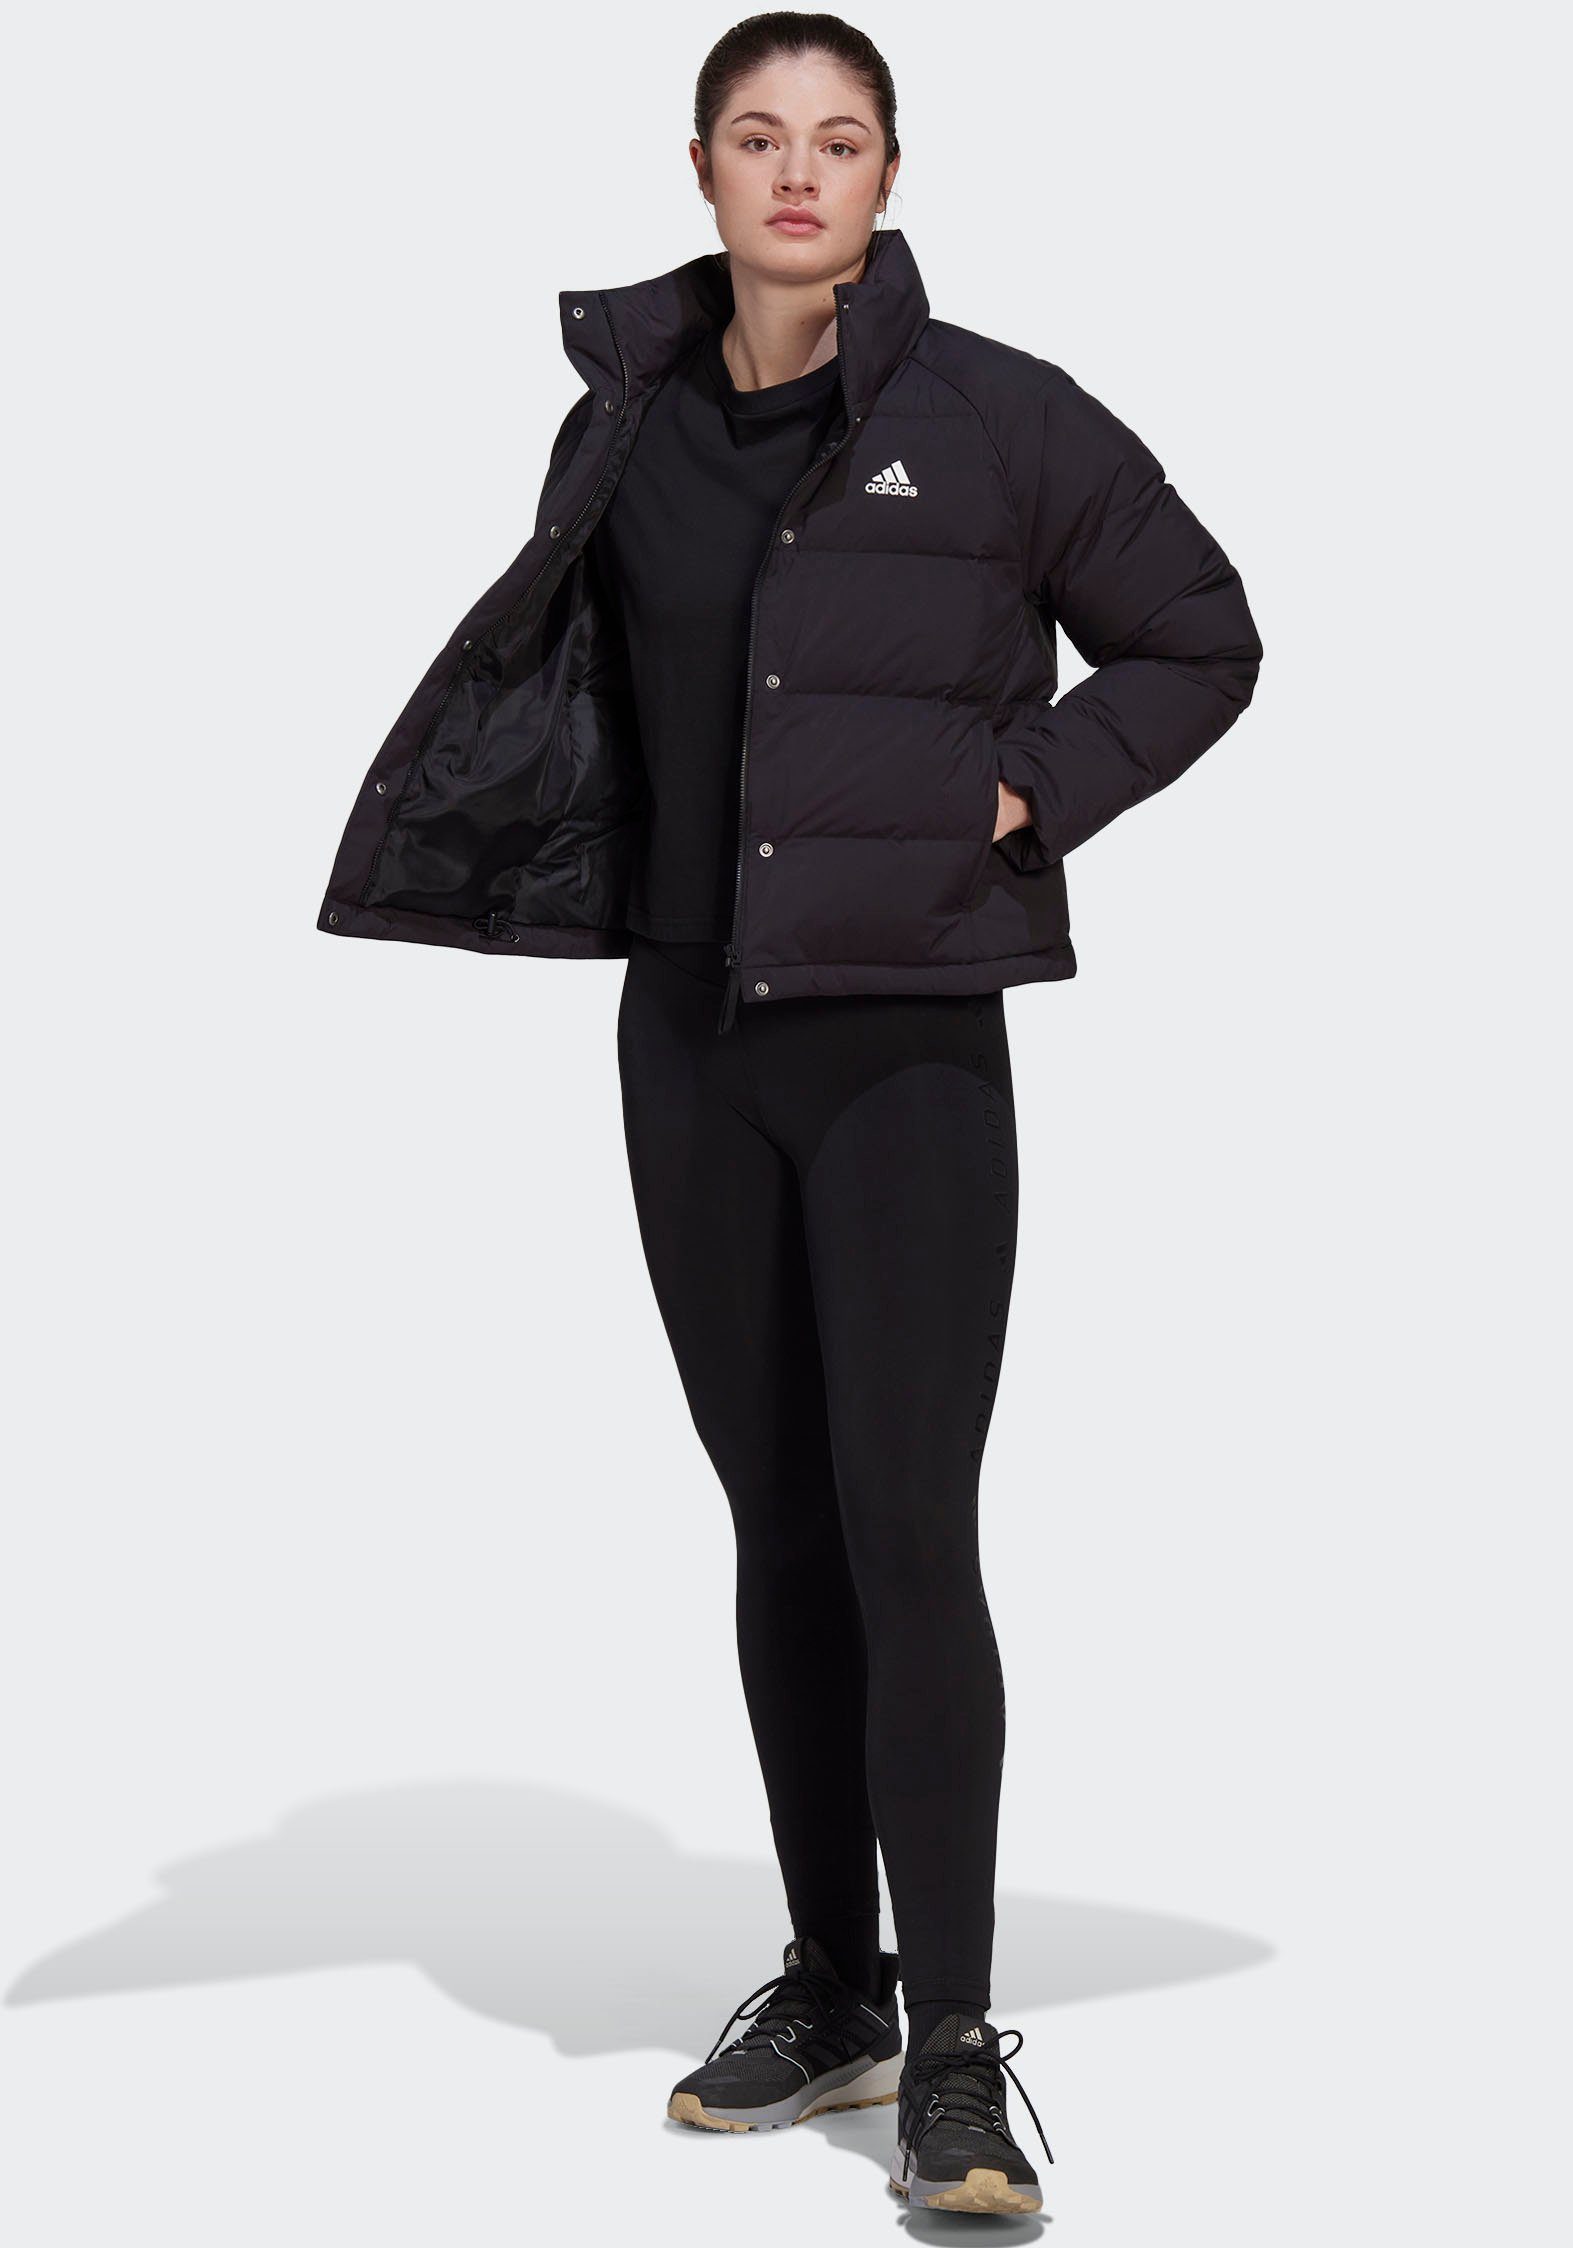 RELAXED DAUNENJACKE Sportswear schwarz Outdoorjacke HELIONIC adidas